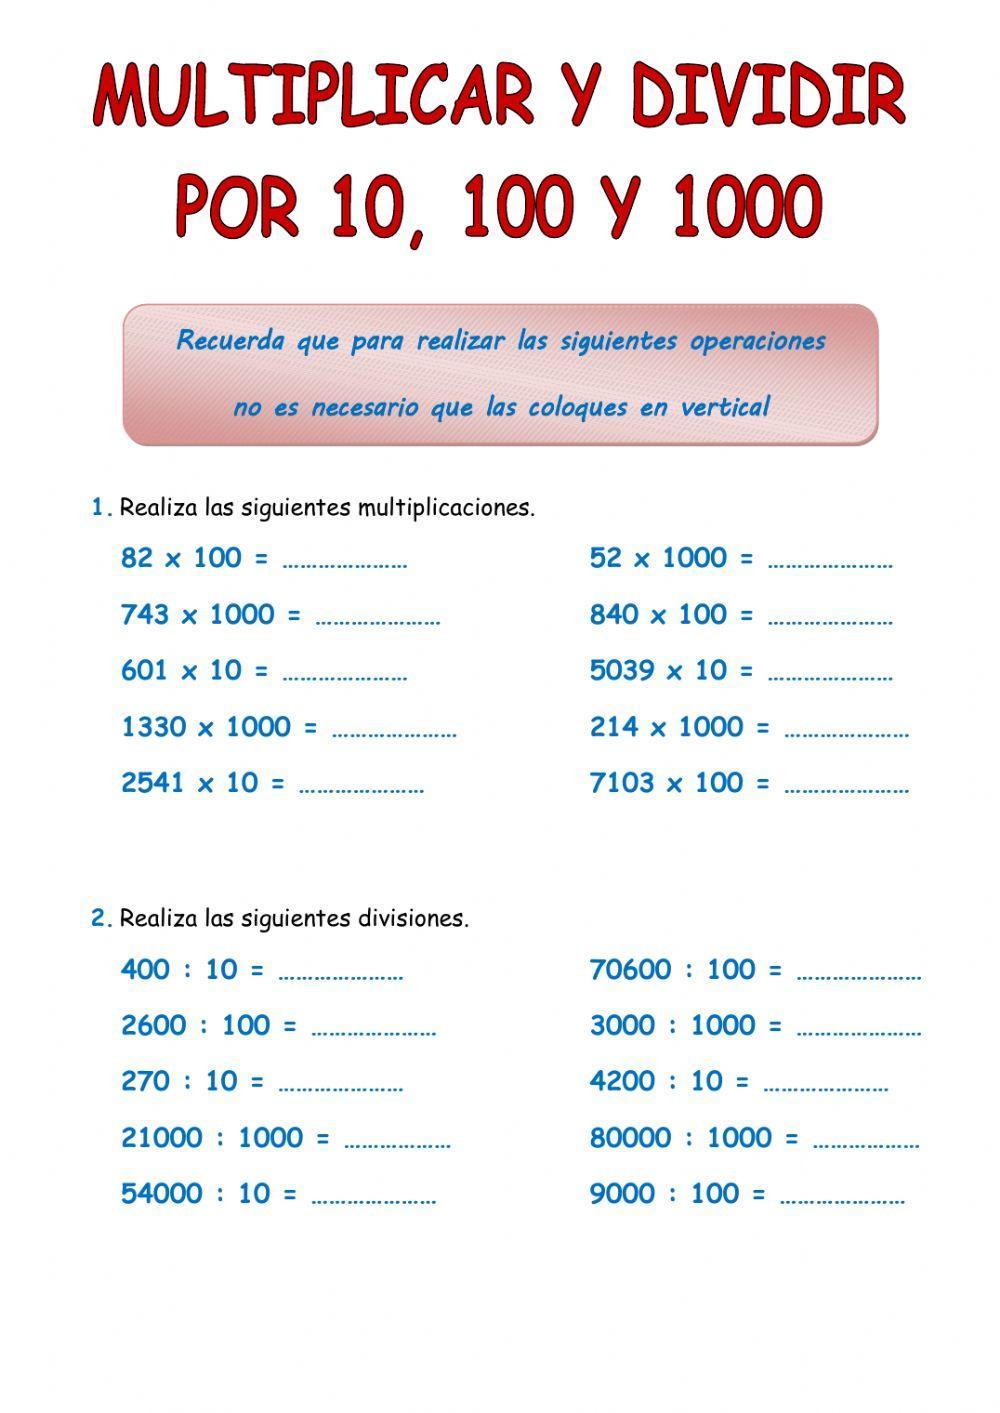 Multiplicar y dividir por 10, 100 y 1000